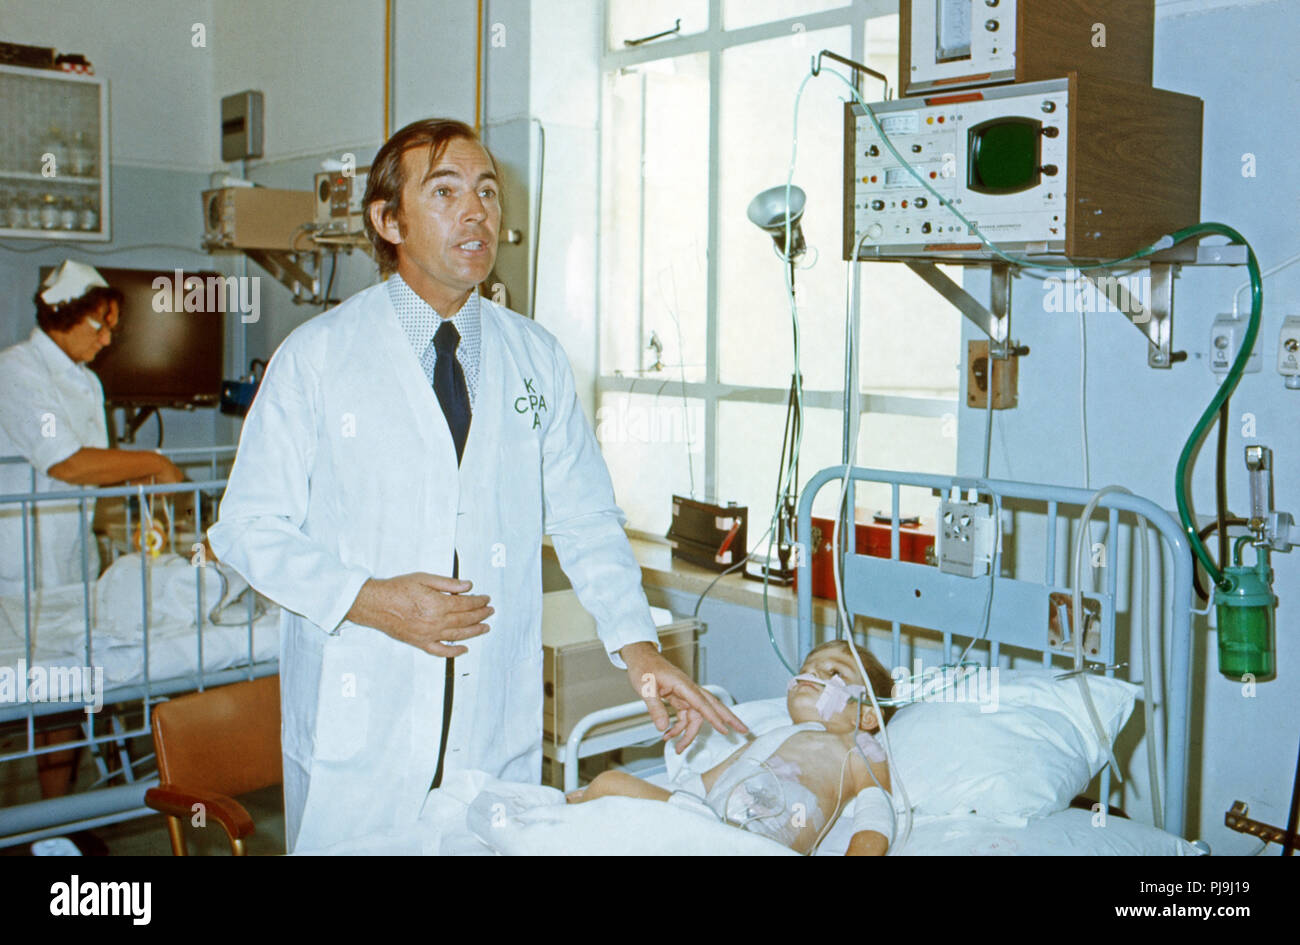 Der südafrikanische Herzchirurg Christiaan Barnard bei der Untersuchung eines kleinen Jungen im Krankenhaus in Kapstadt, Südafrika 1974. South African cardiac surgeon Christiaan Barnard examining a little boy at the hospital in Cape Town, South Africa 1974. Stock Photo